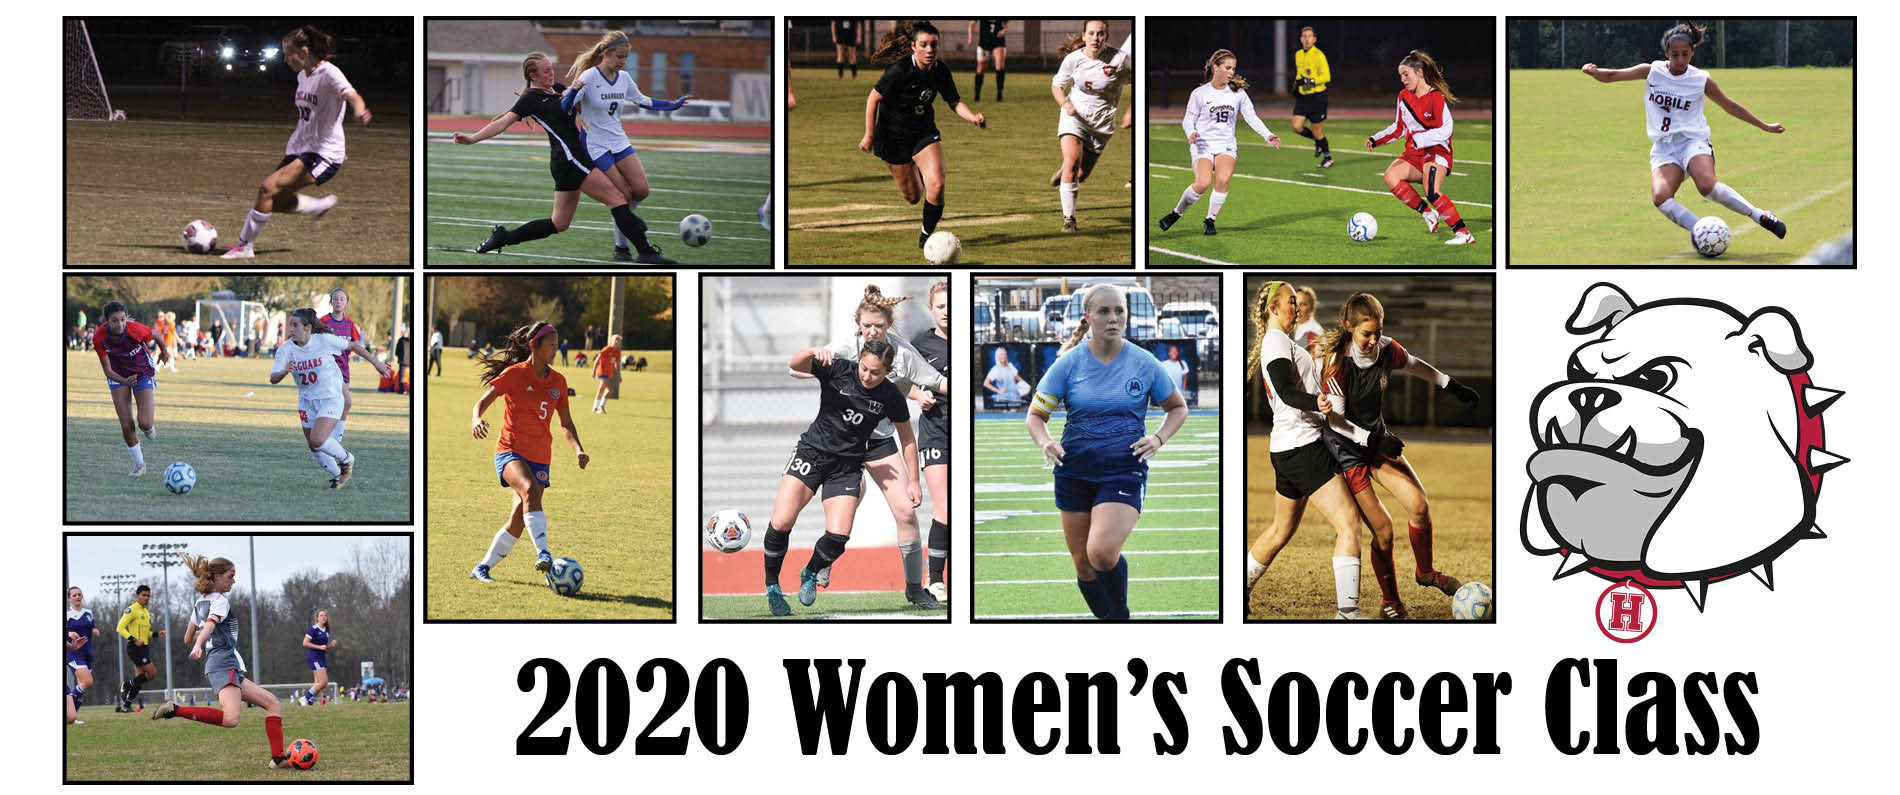 2020 class named for women's soccer